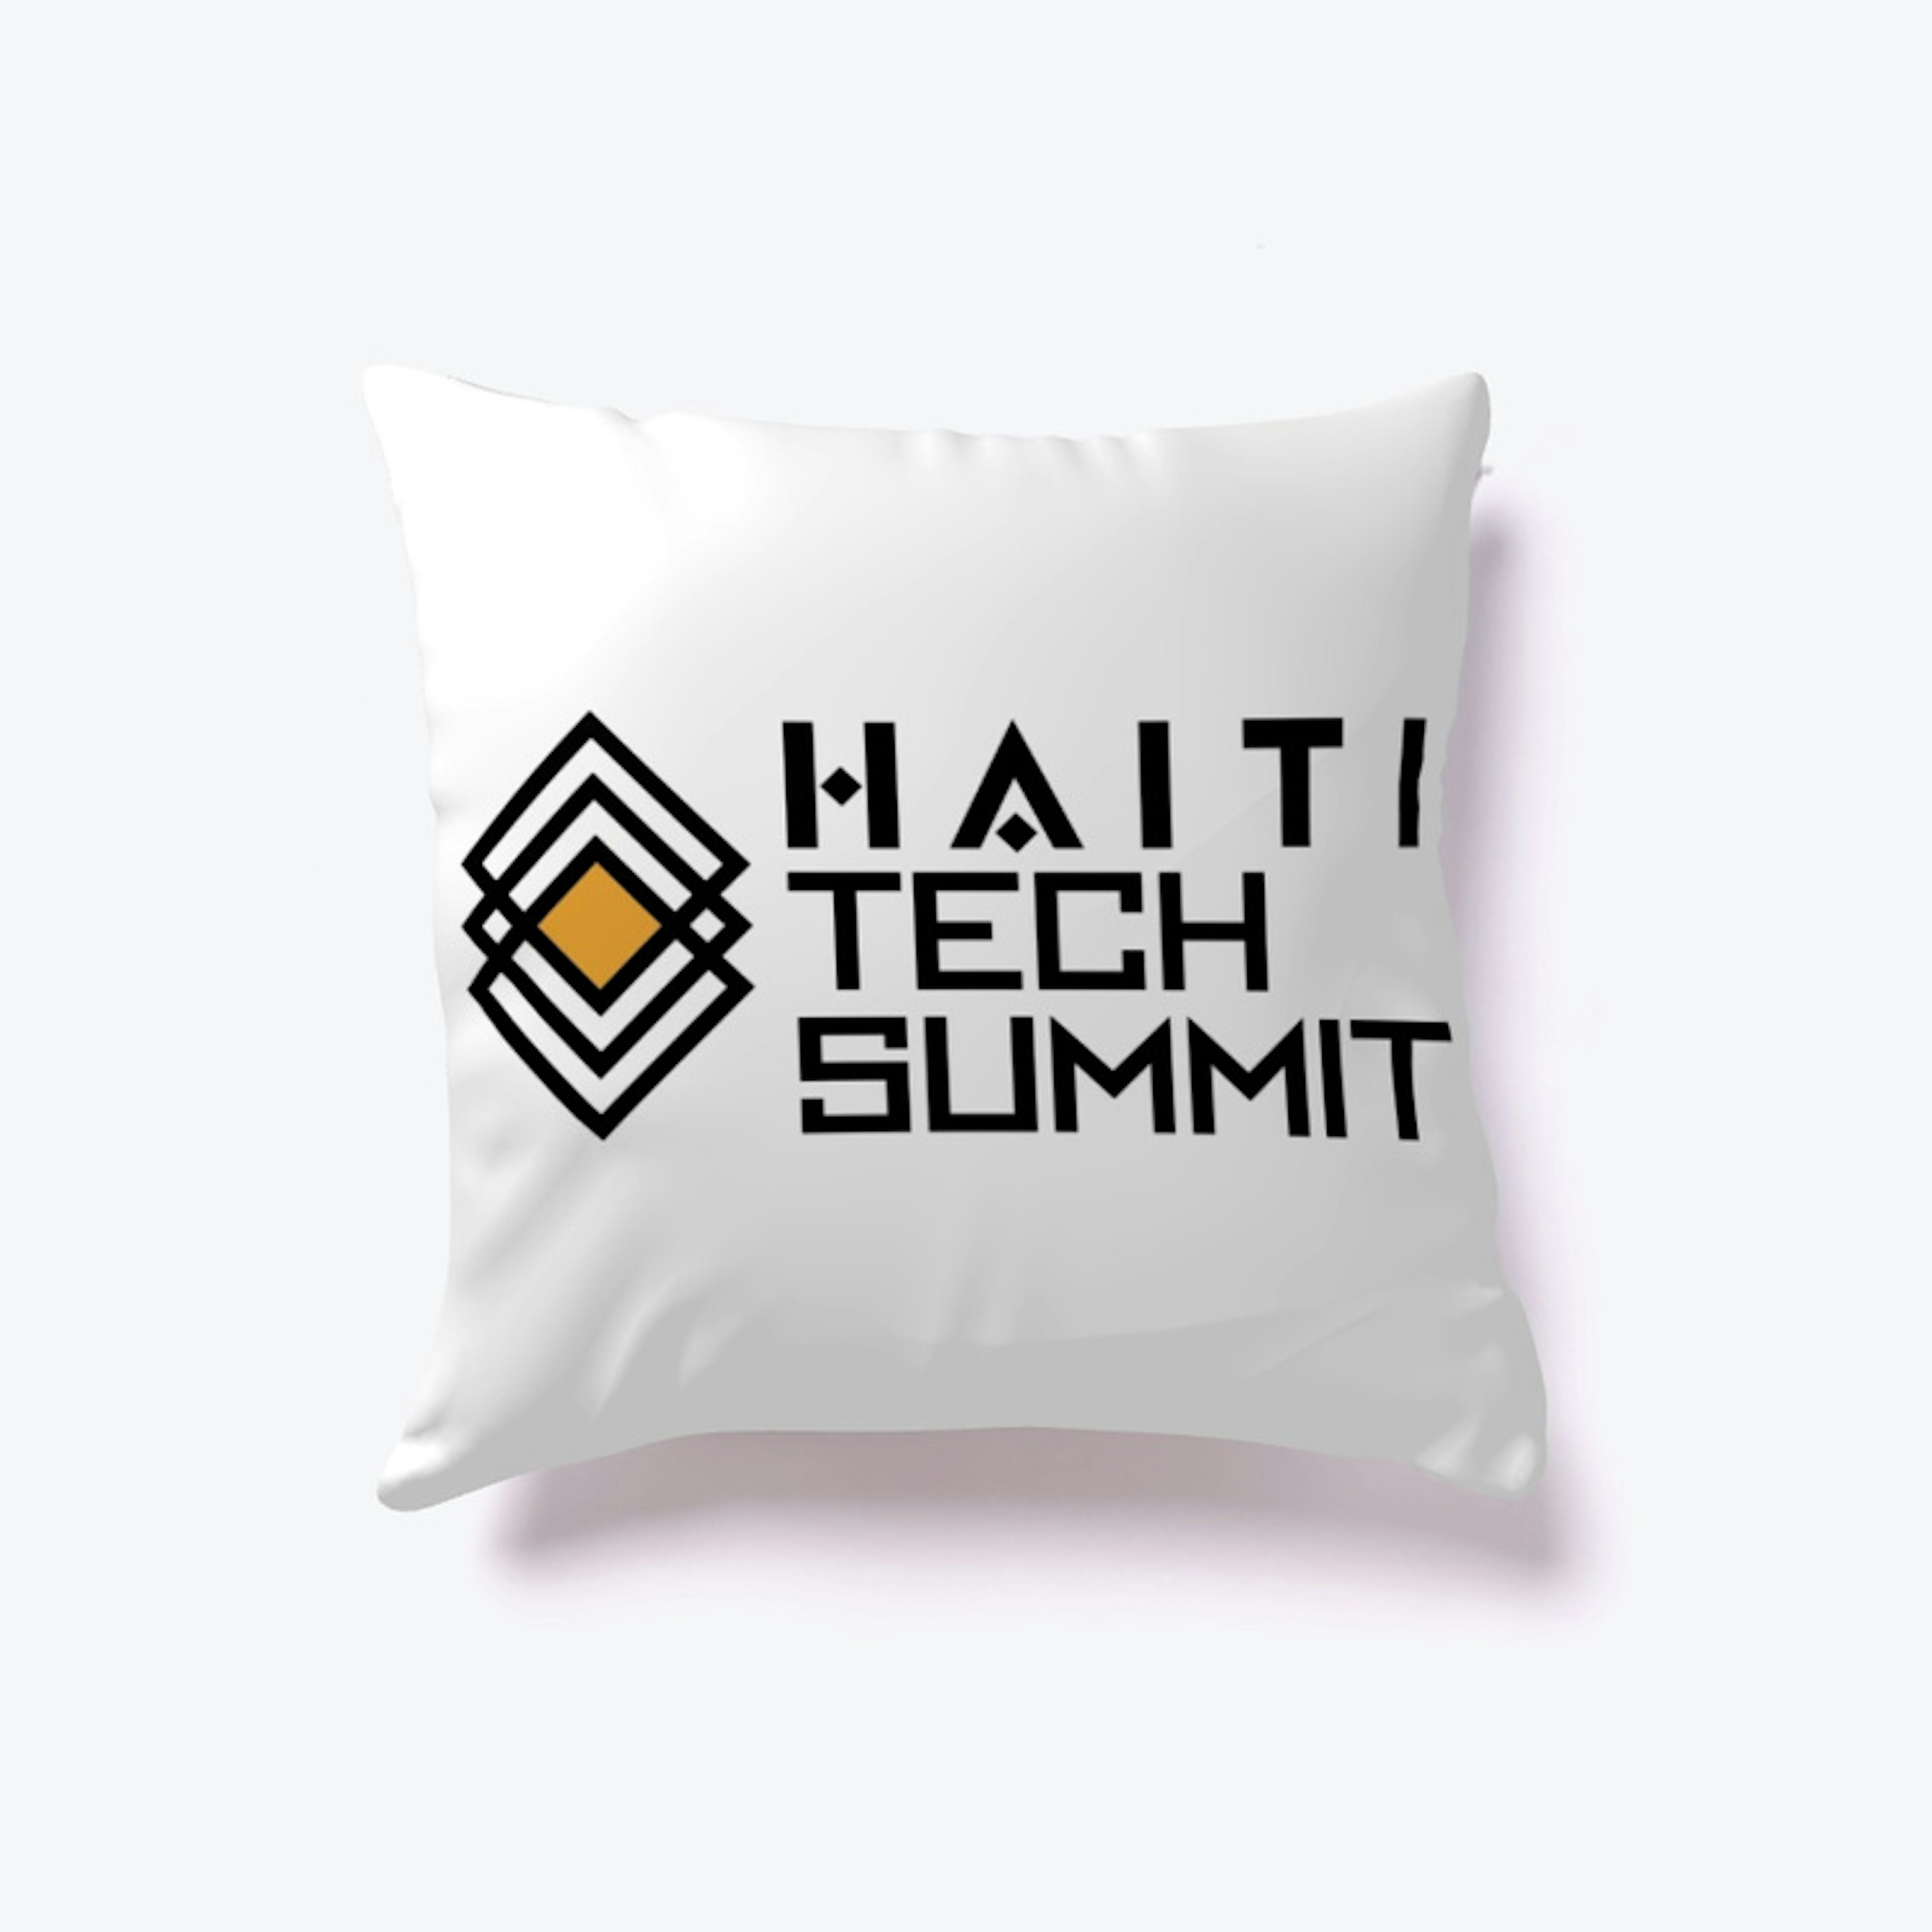 Haiti Tech Summit Swag Pack  (White)